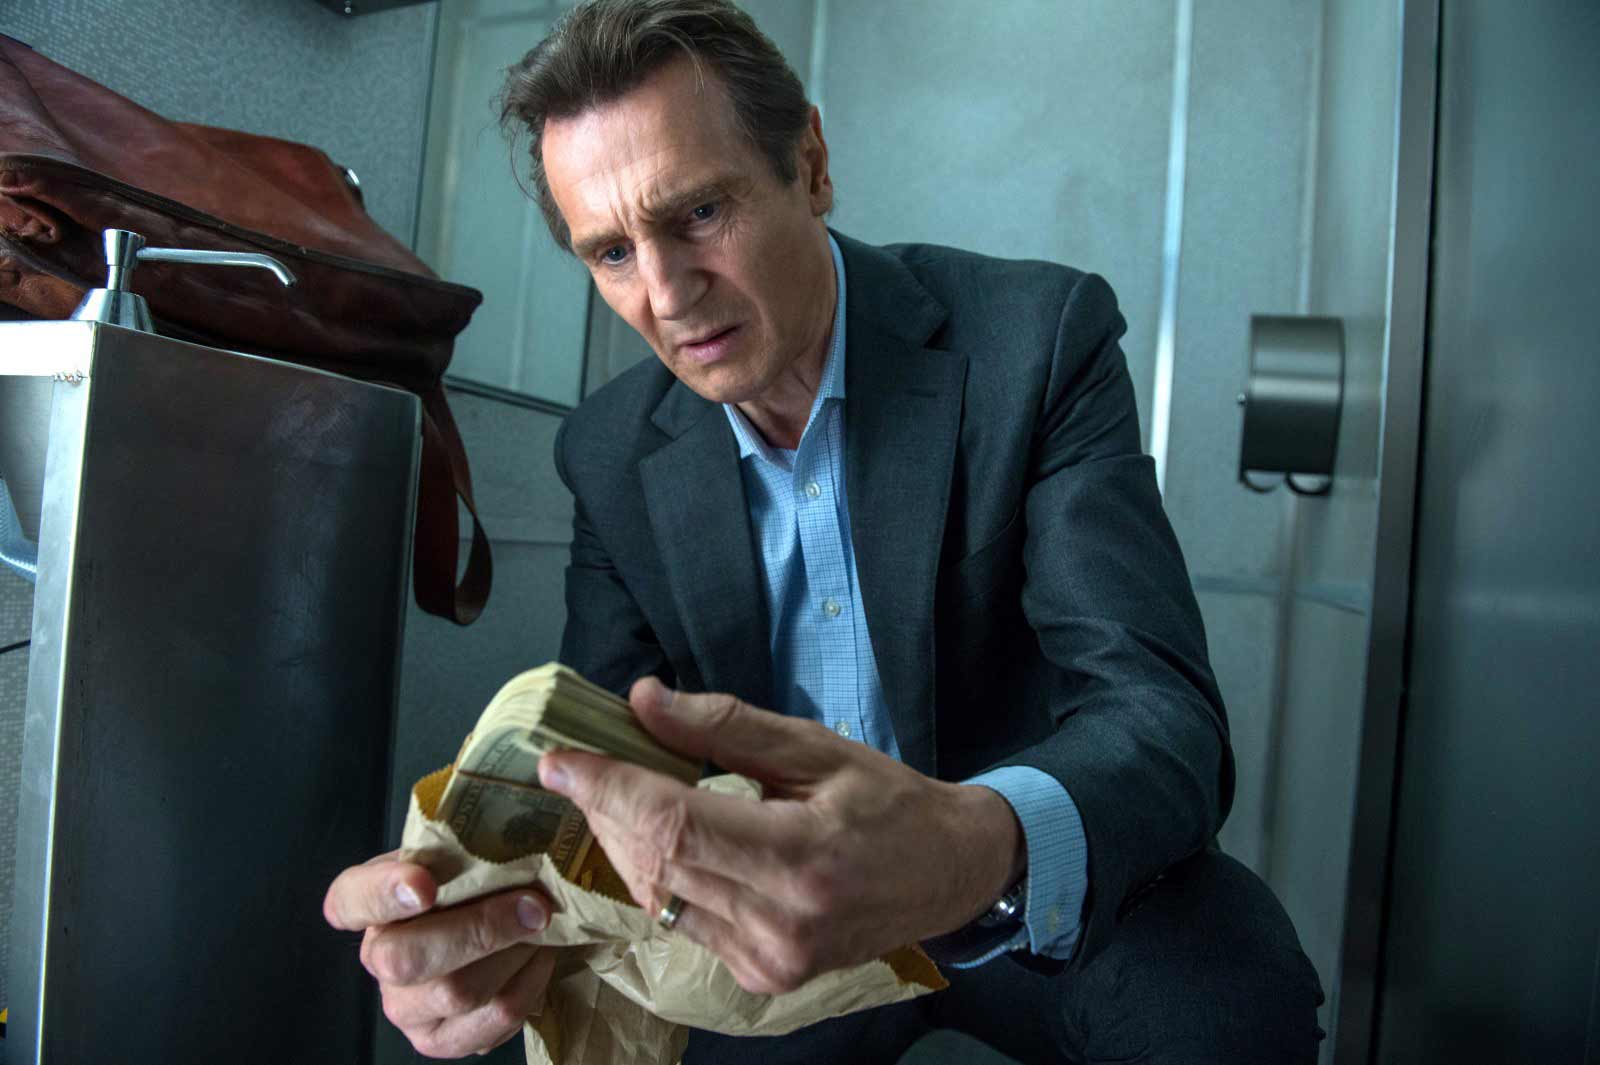 Crítica de la película “El pasajero”: Los icónicos puñetazos de Neeson